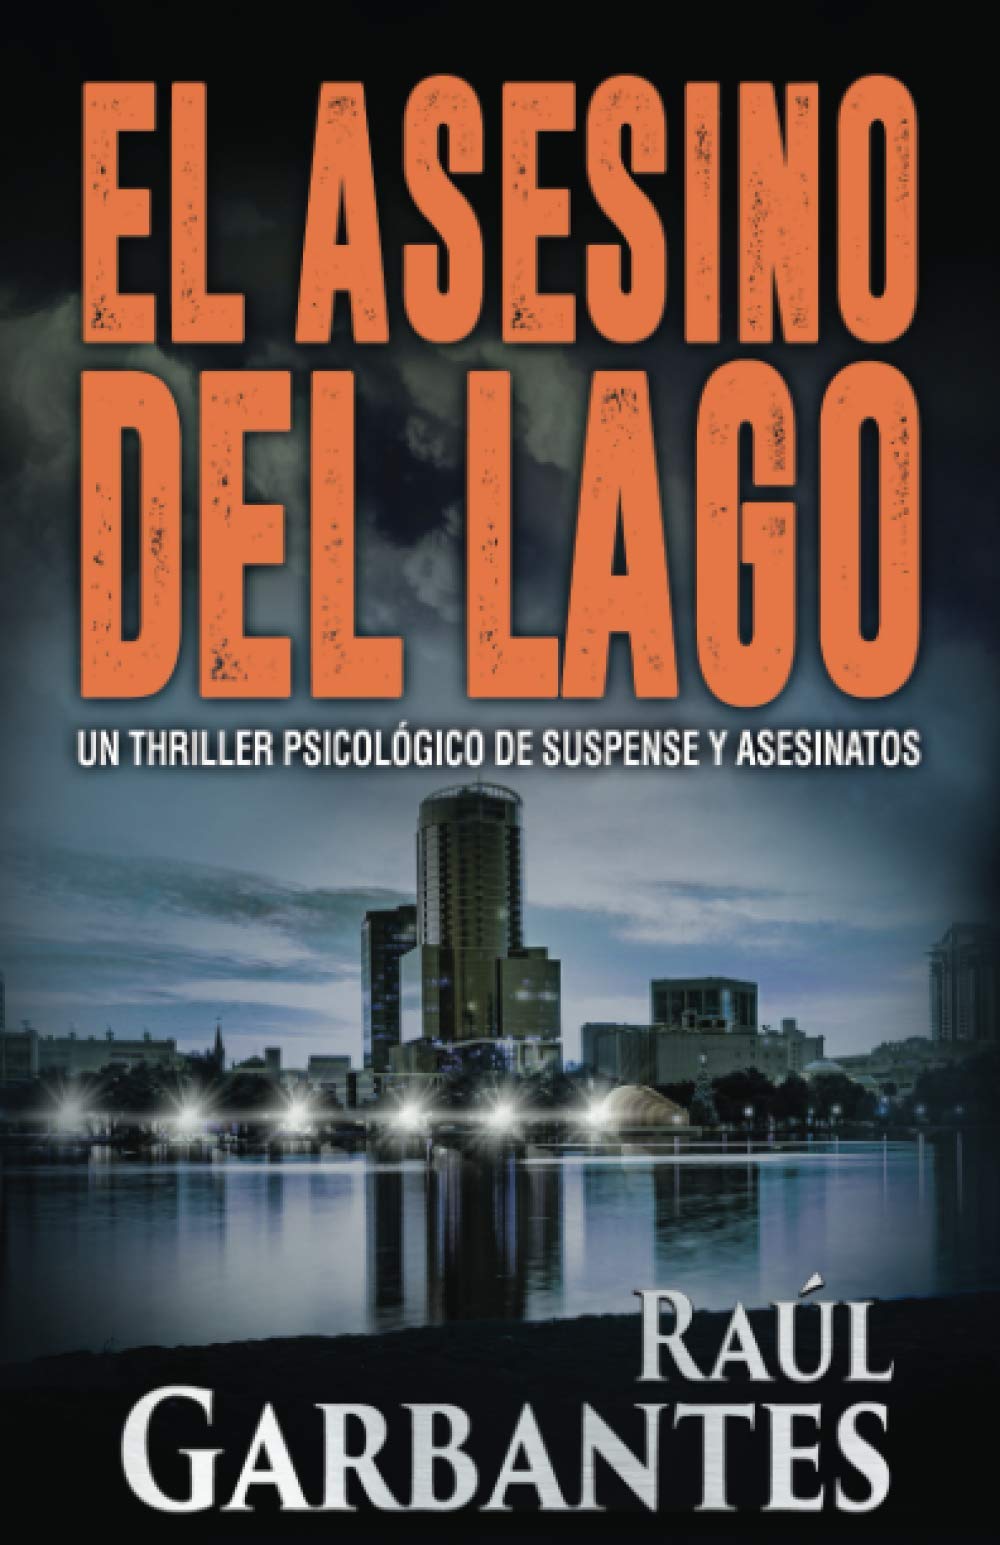 Libro: El Asesino del Lago - un thriller psicológico de suspenso y asesinatos por Raúl Garbantes